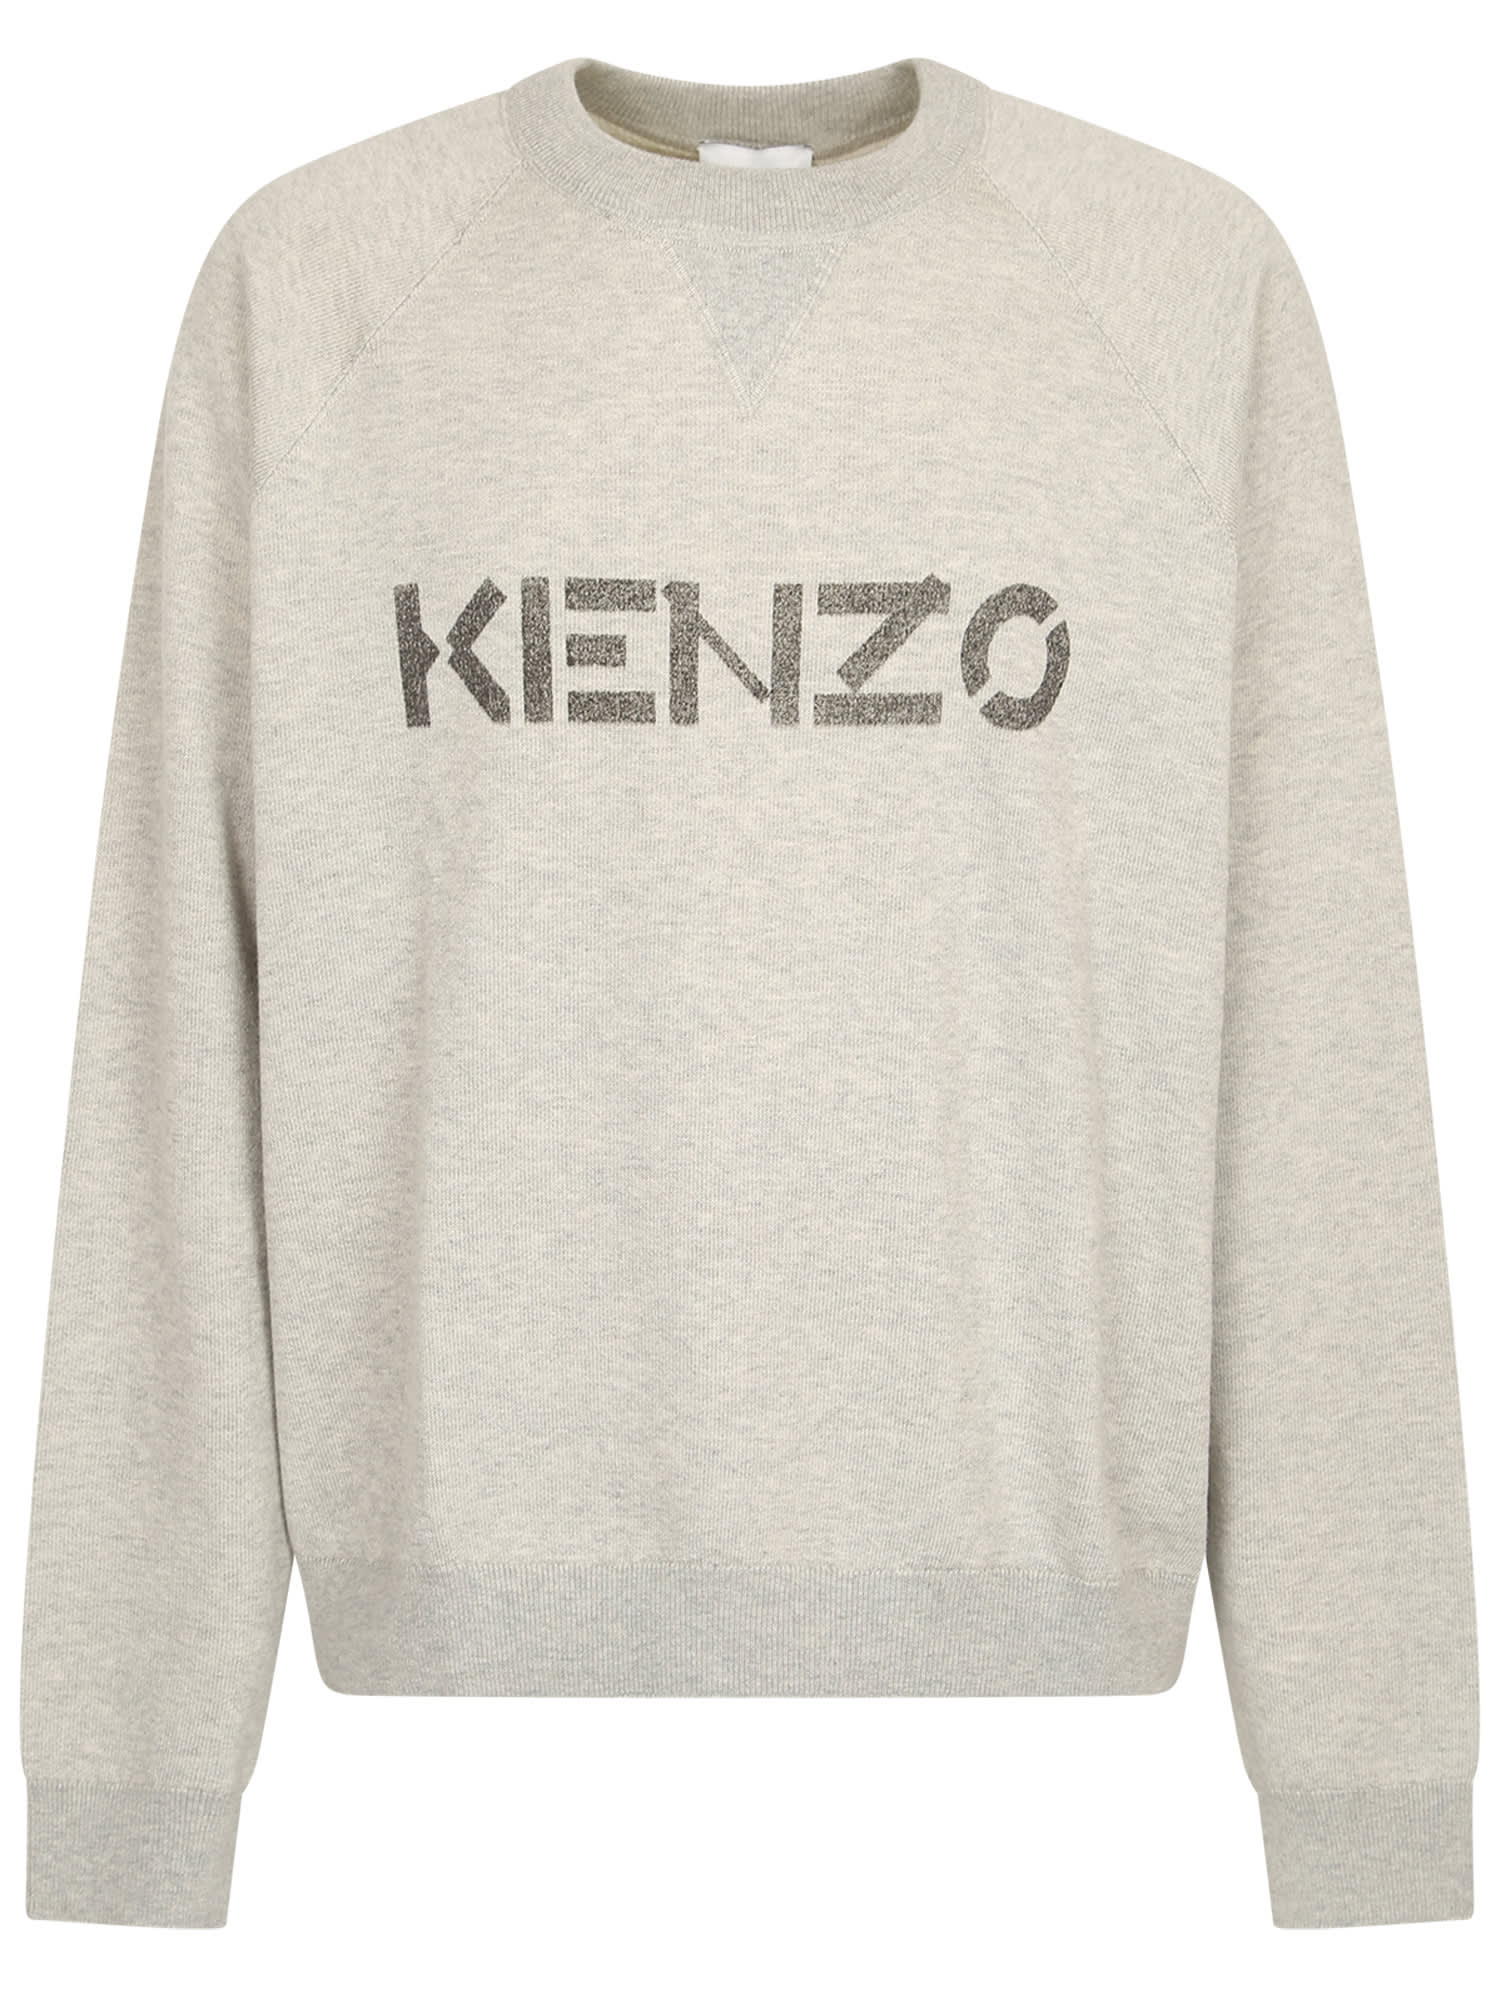 Kenzo Pull Giro Logo Merino Cot Beige